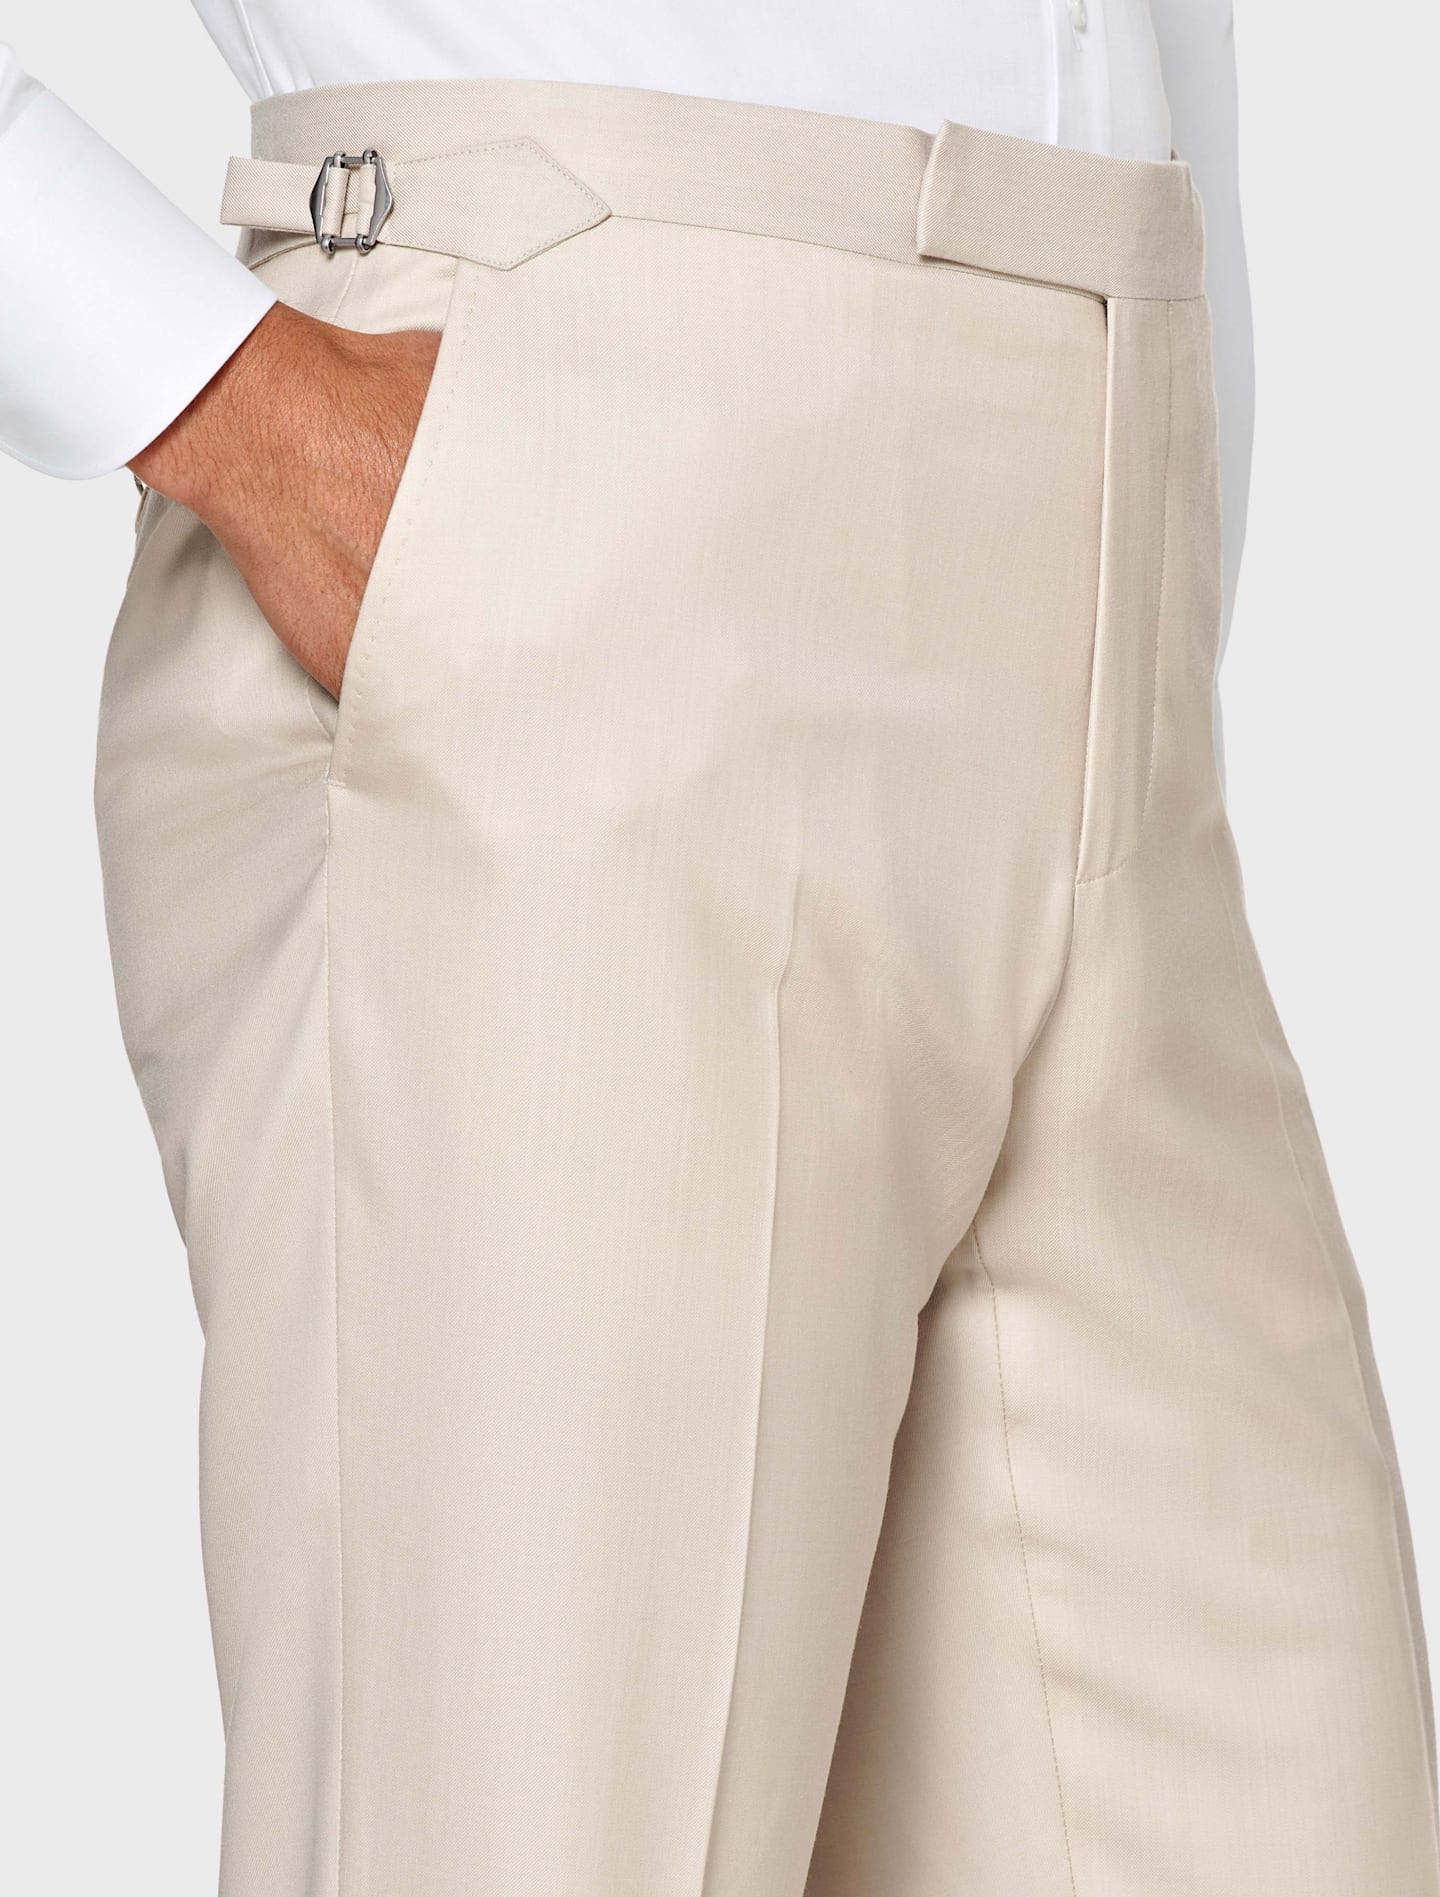 Pantaloni marrone chiaro con regolatori laterali